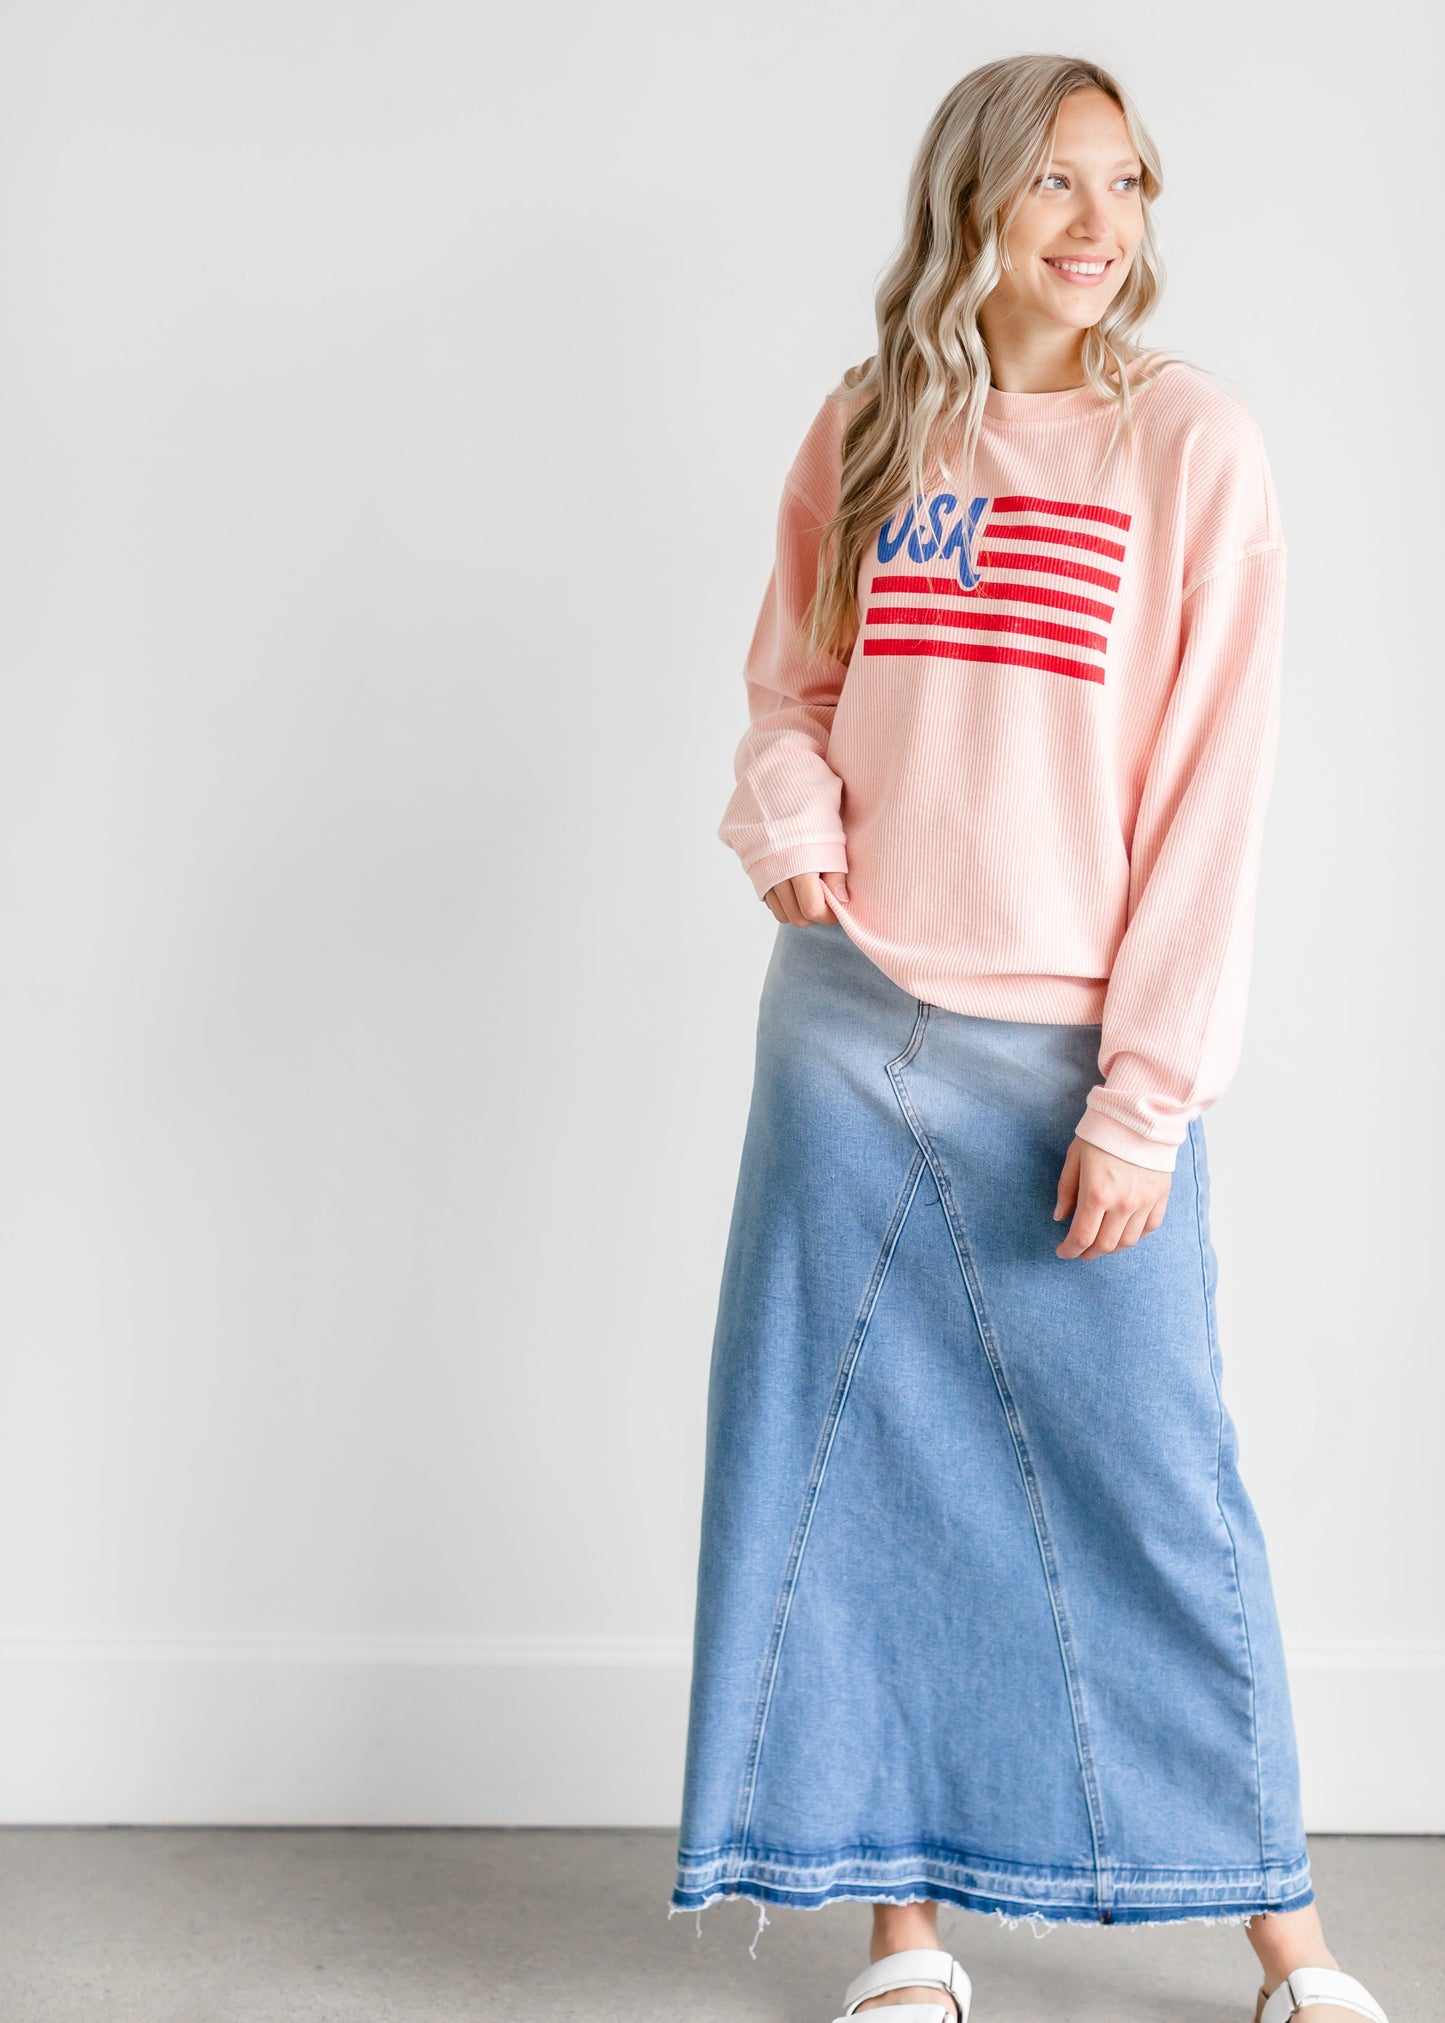 Pink USA Flag Crewneck Sweatshirt Tops